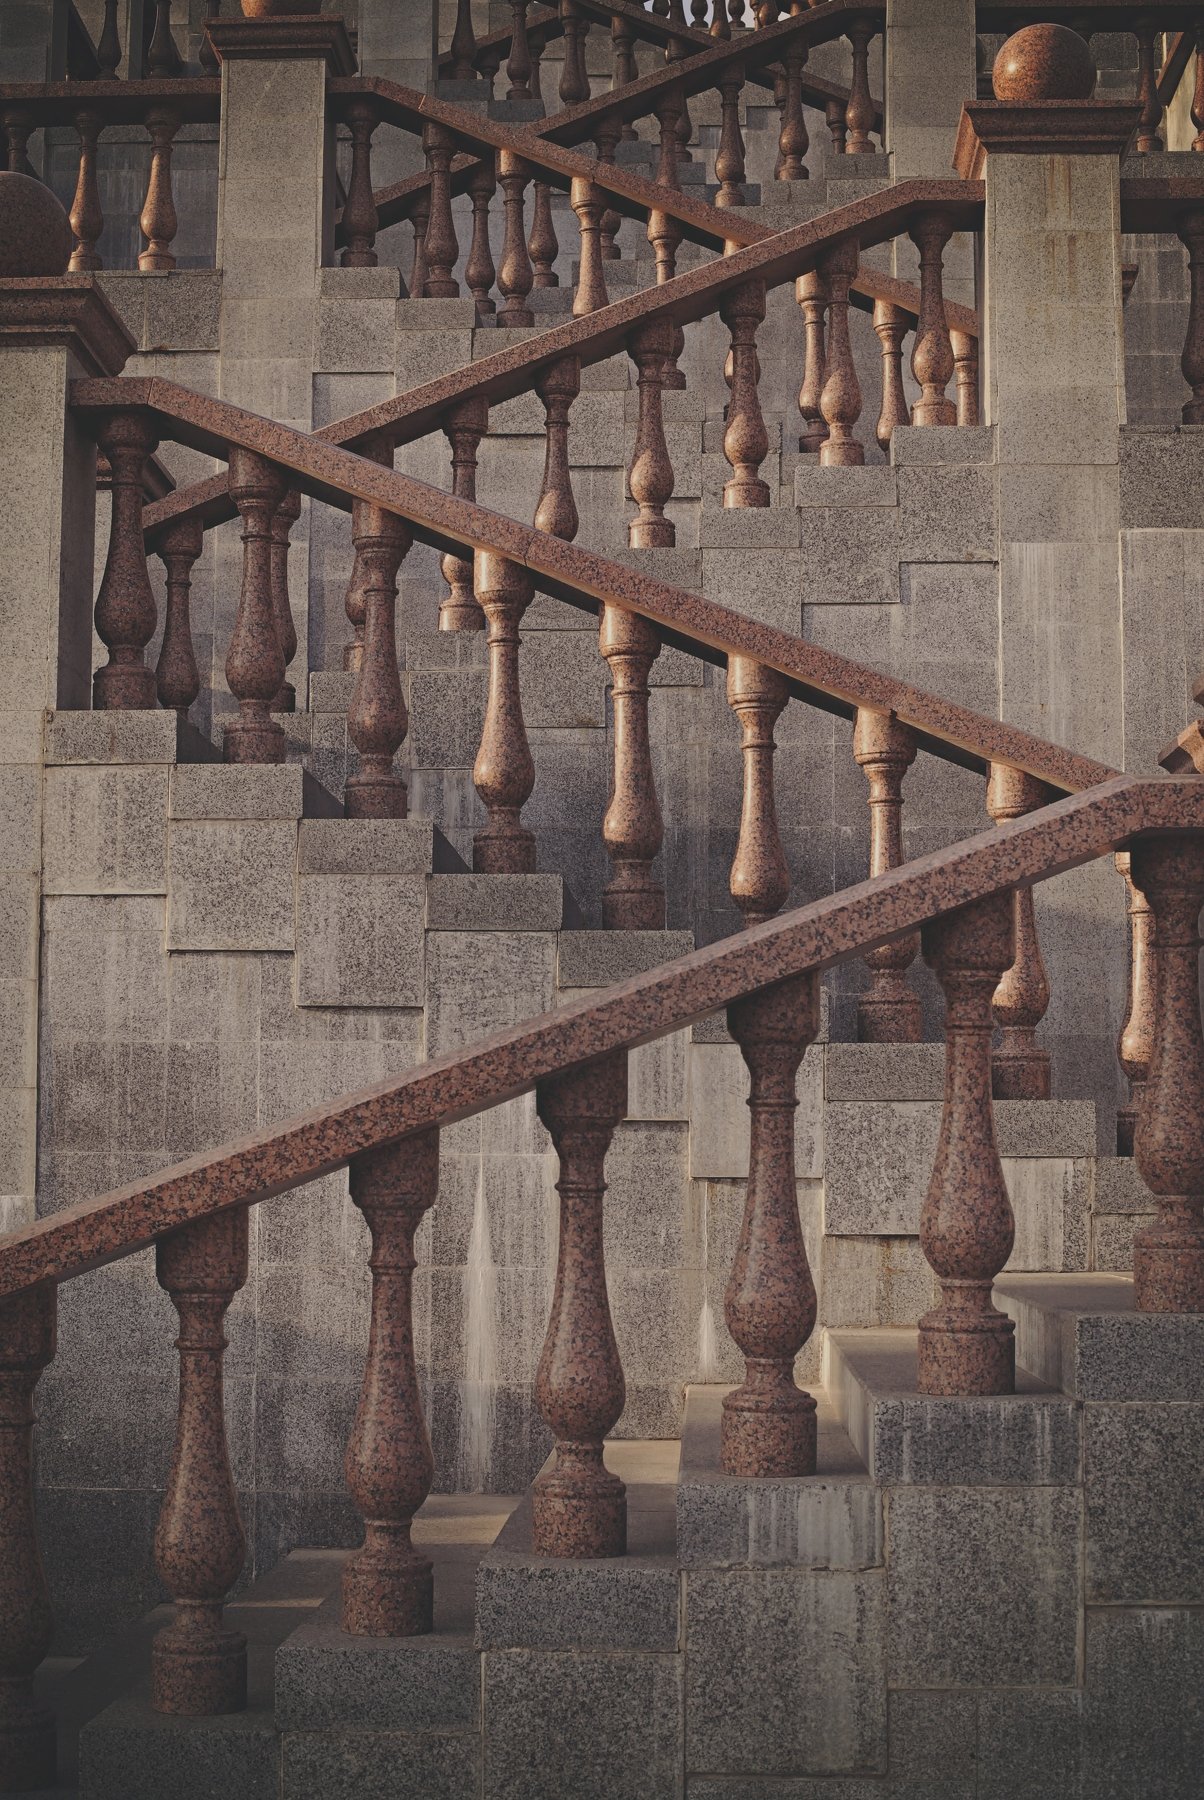 ступени, ведущие к собору лестница перила помолейко pomoleyko vitebsk витебск балюстрады балясины, Павел Помолейко